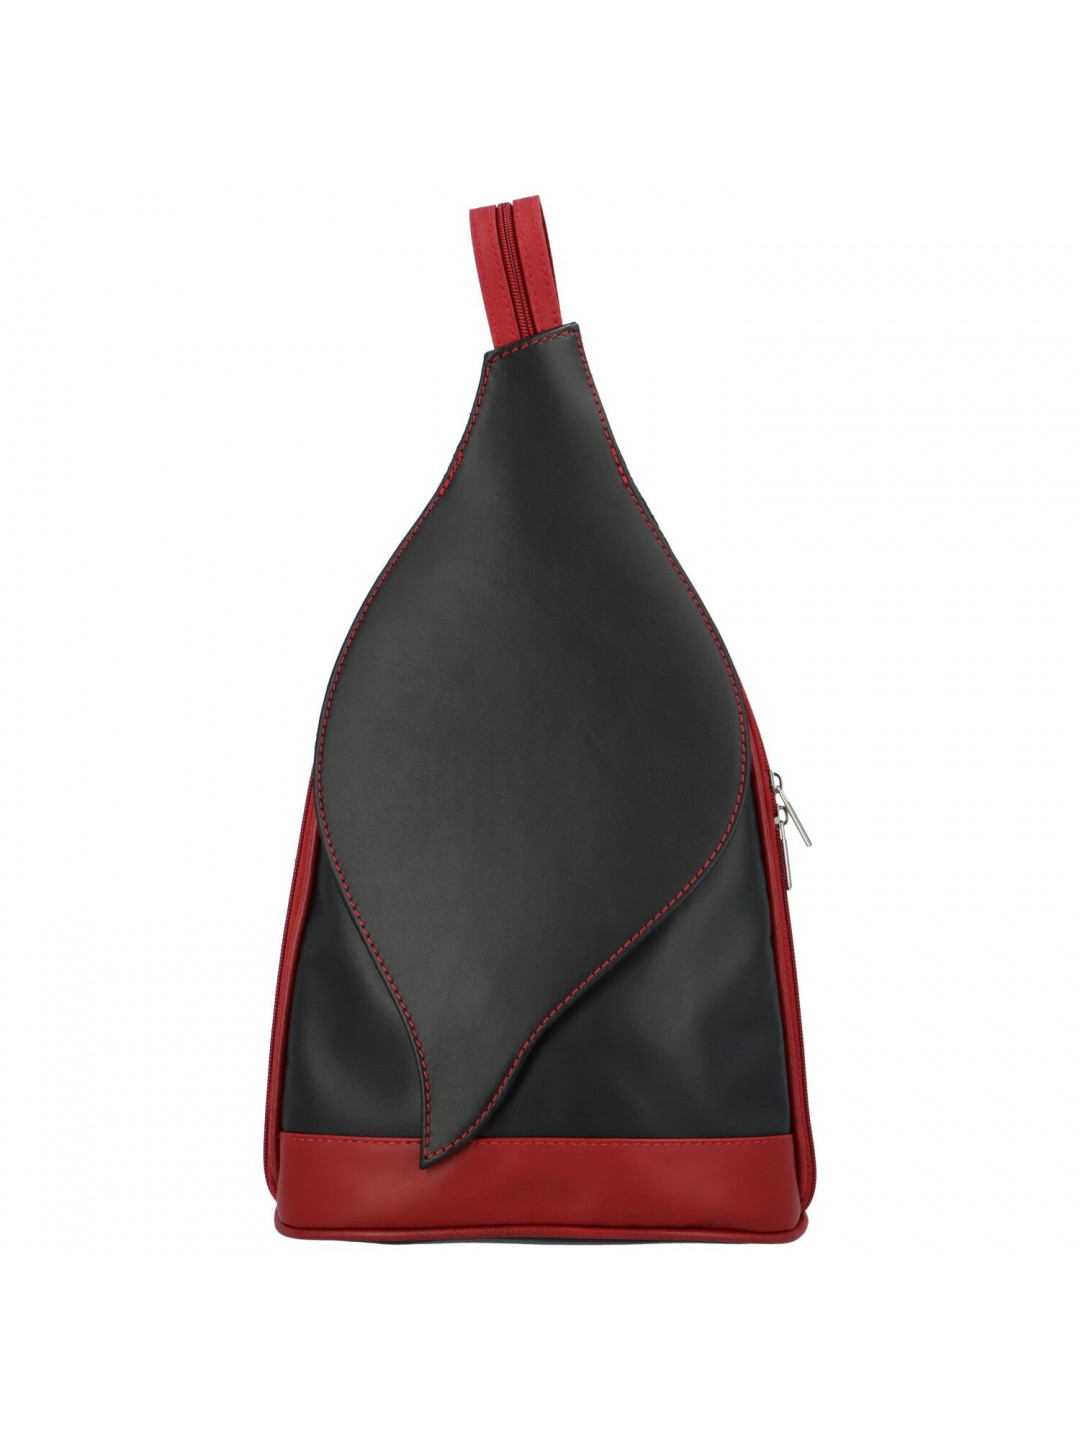 Zajímavý dámský kožený batůžek Emma černá – červená